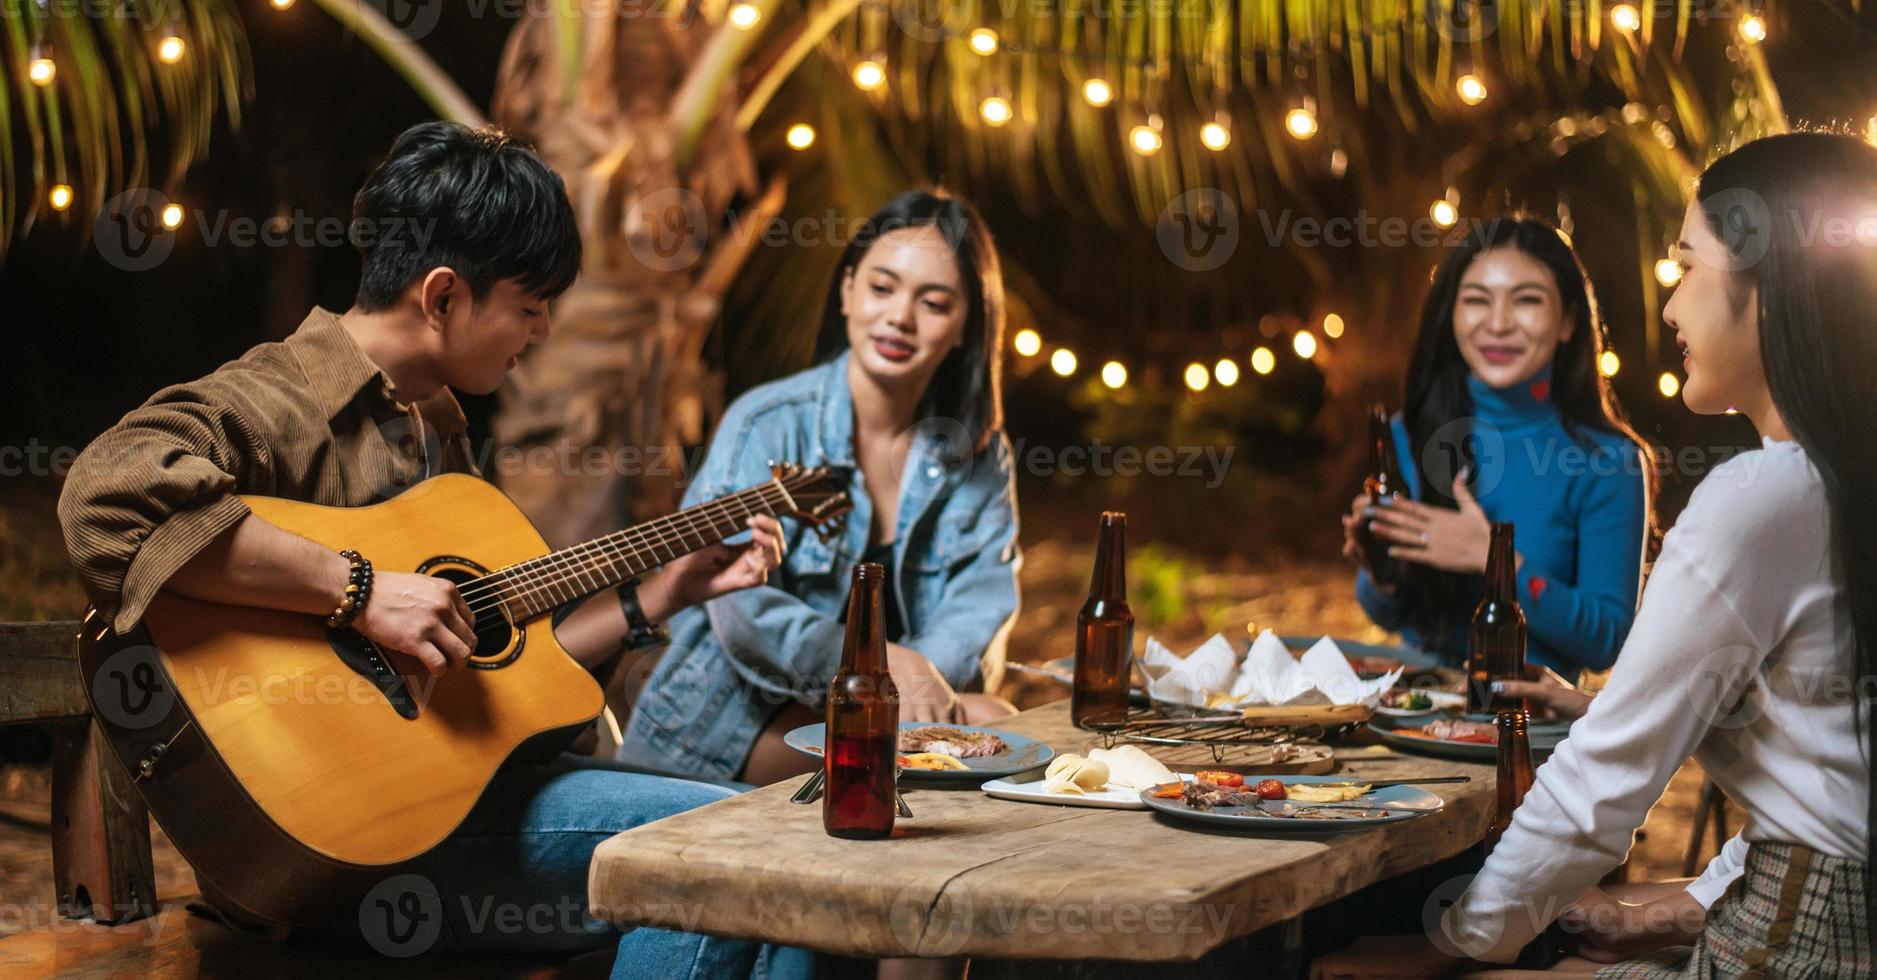 porträtt av Lycklig asiatisk grupp av vänner har roligt till musik dining och dricka tillsammans utomhus- - Lycklig vänner grupp toasting öl - människor, mat, dryck livsstil, ny år firande begrepp. foto